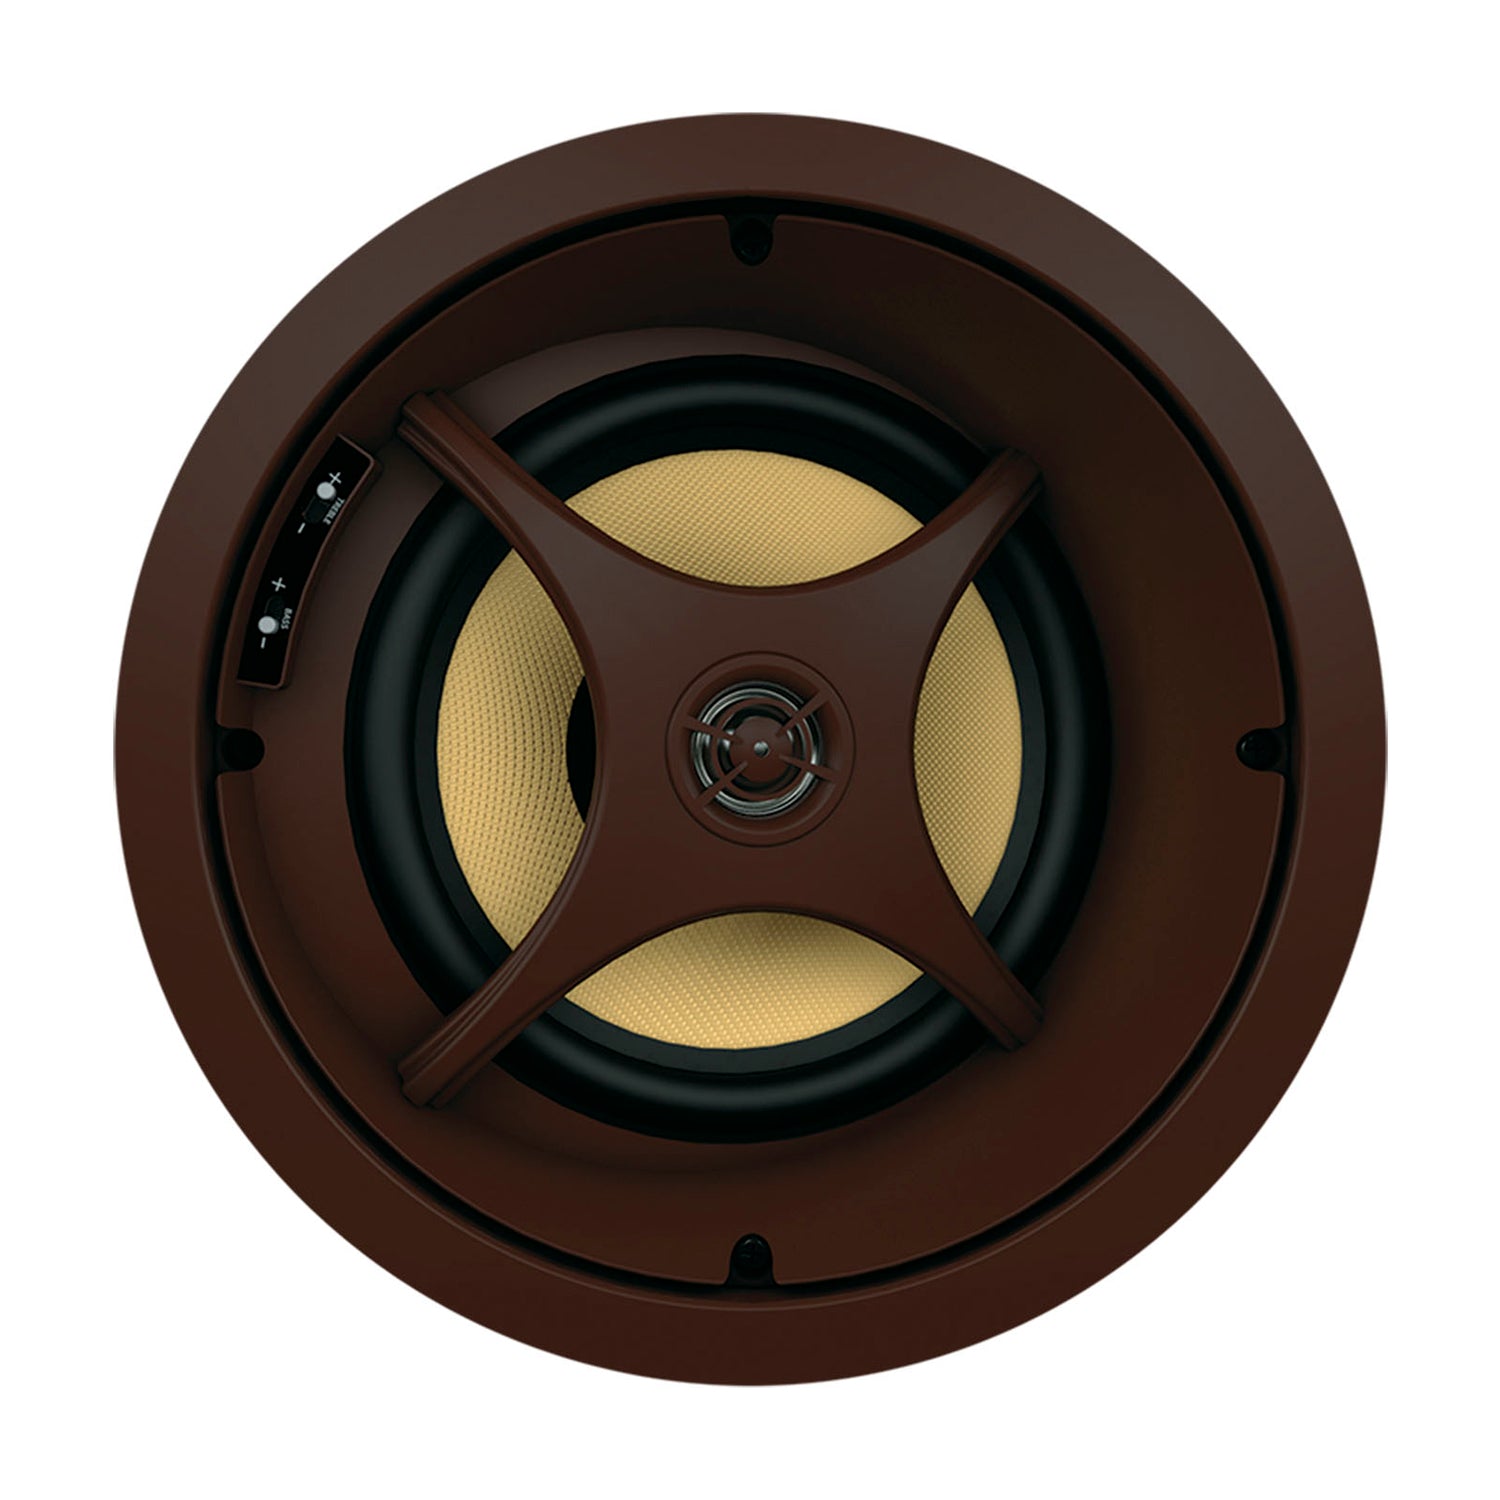 Proficient Audio Signature Series C875s 8" LCR Inceiling Speaker - piece